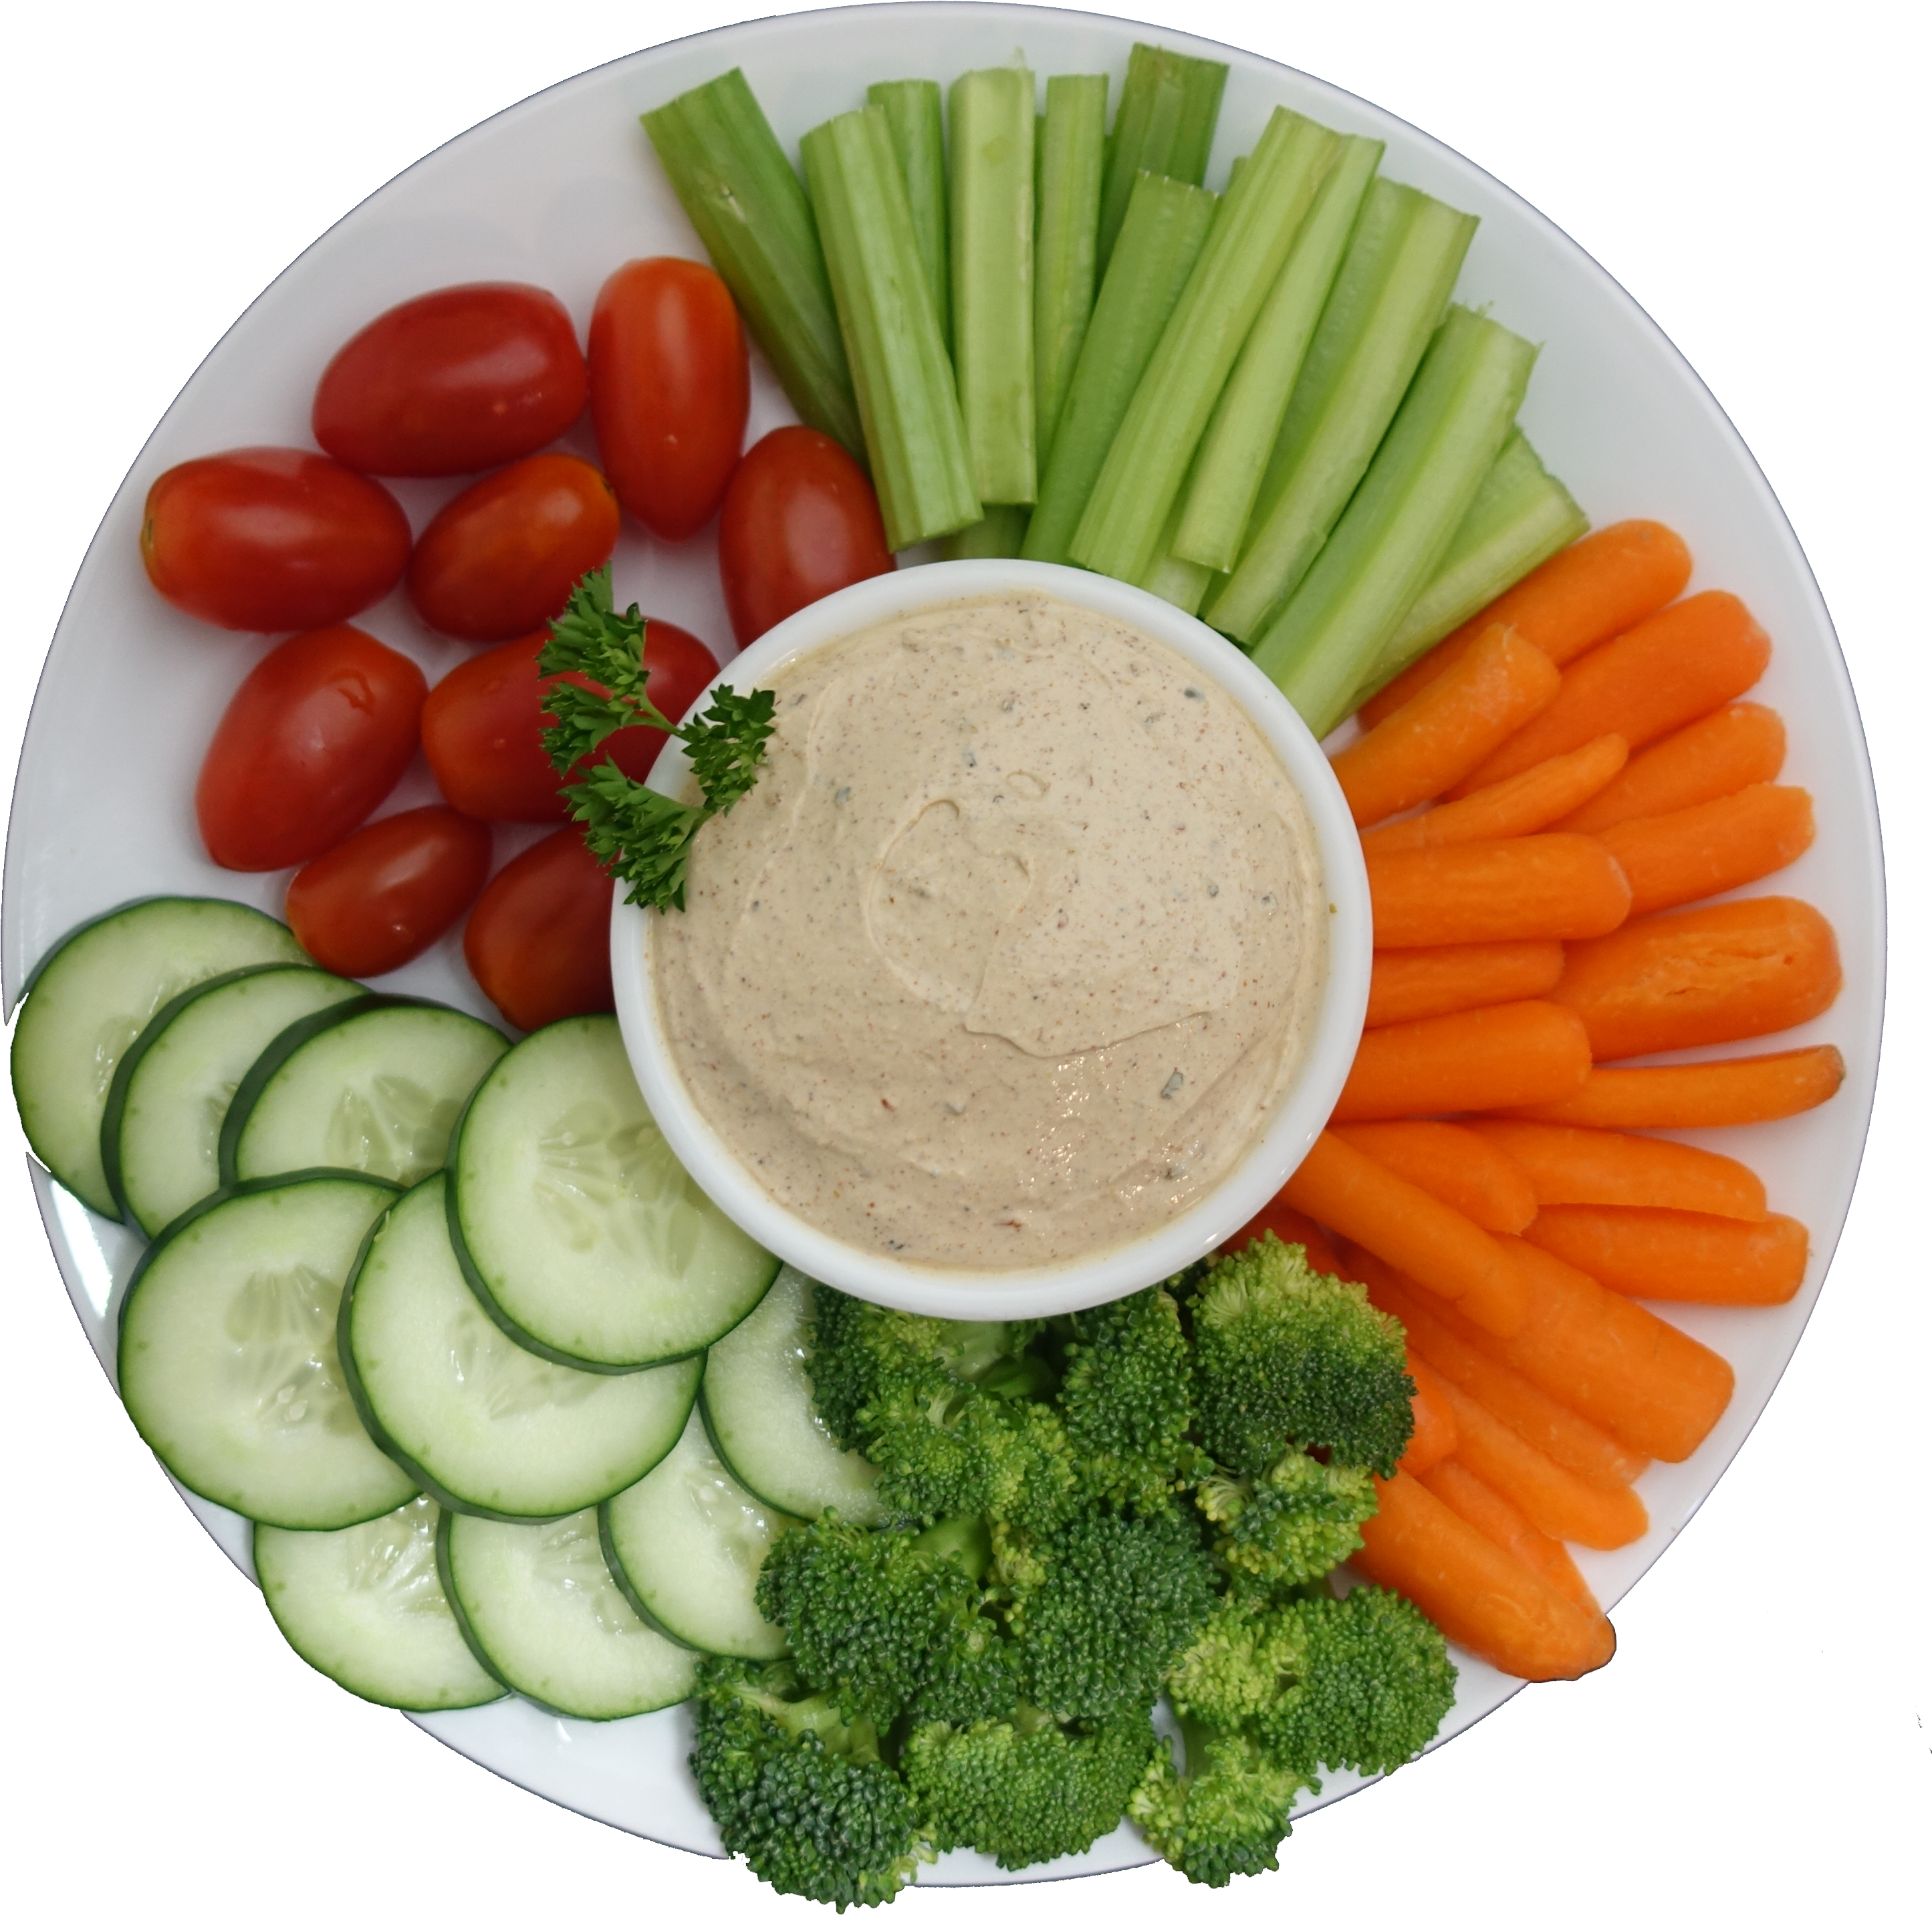 Healthy Vegetable Platterwith Hummus Dip